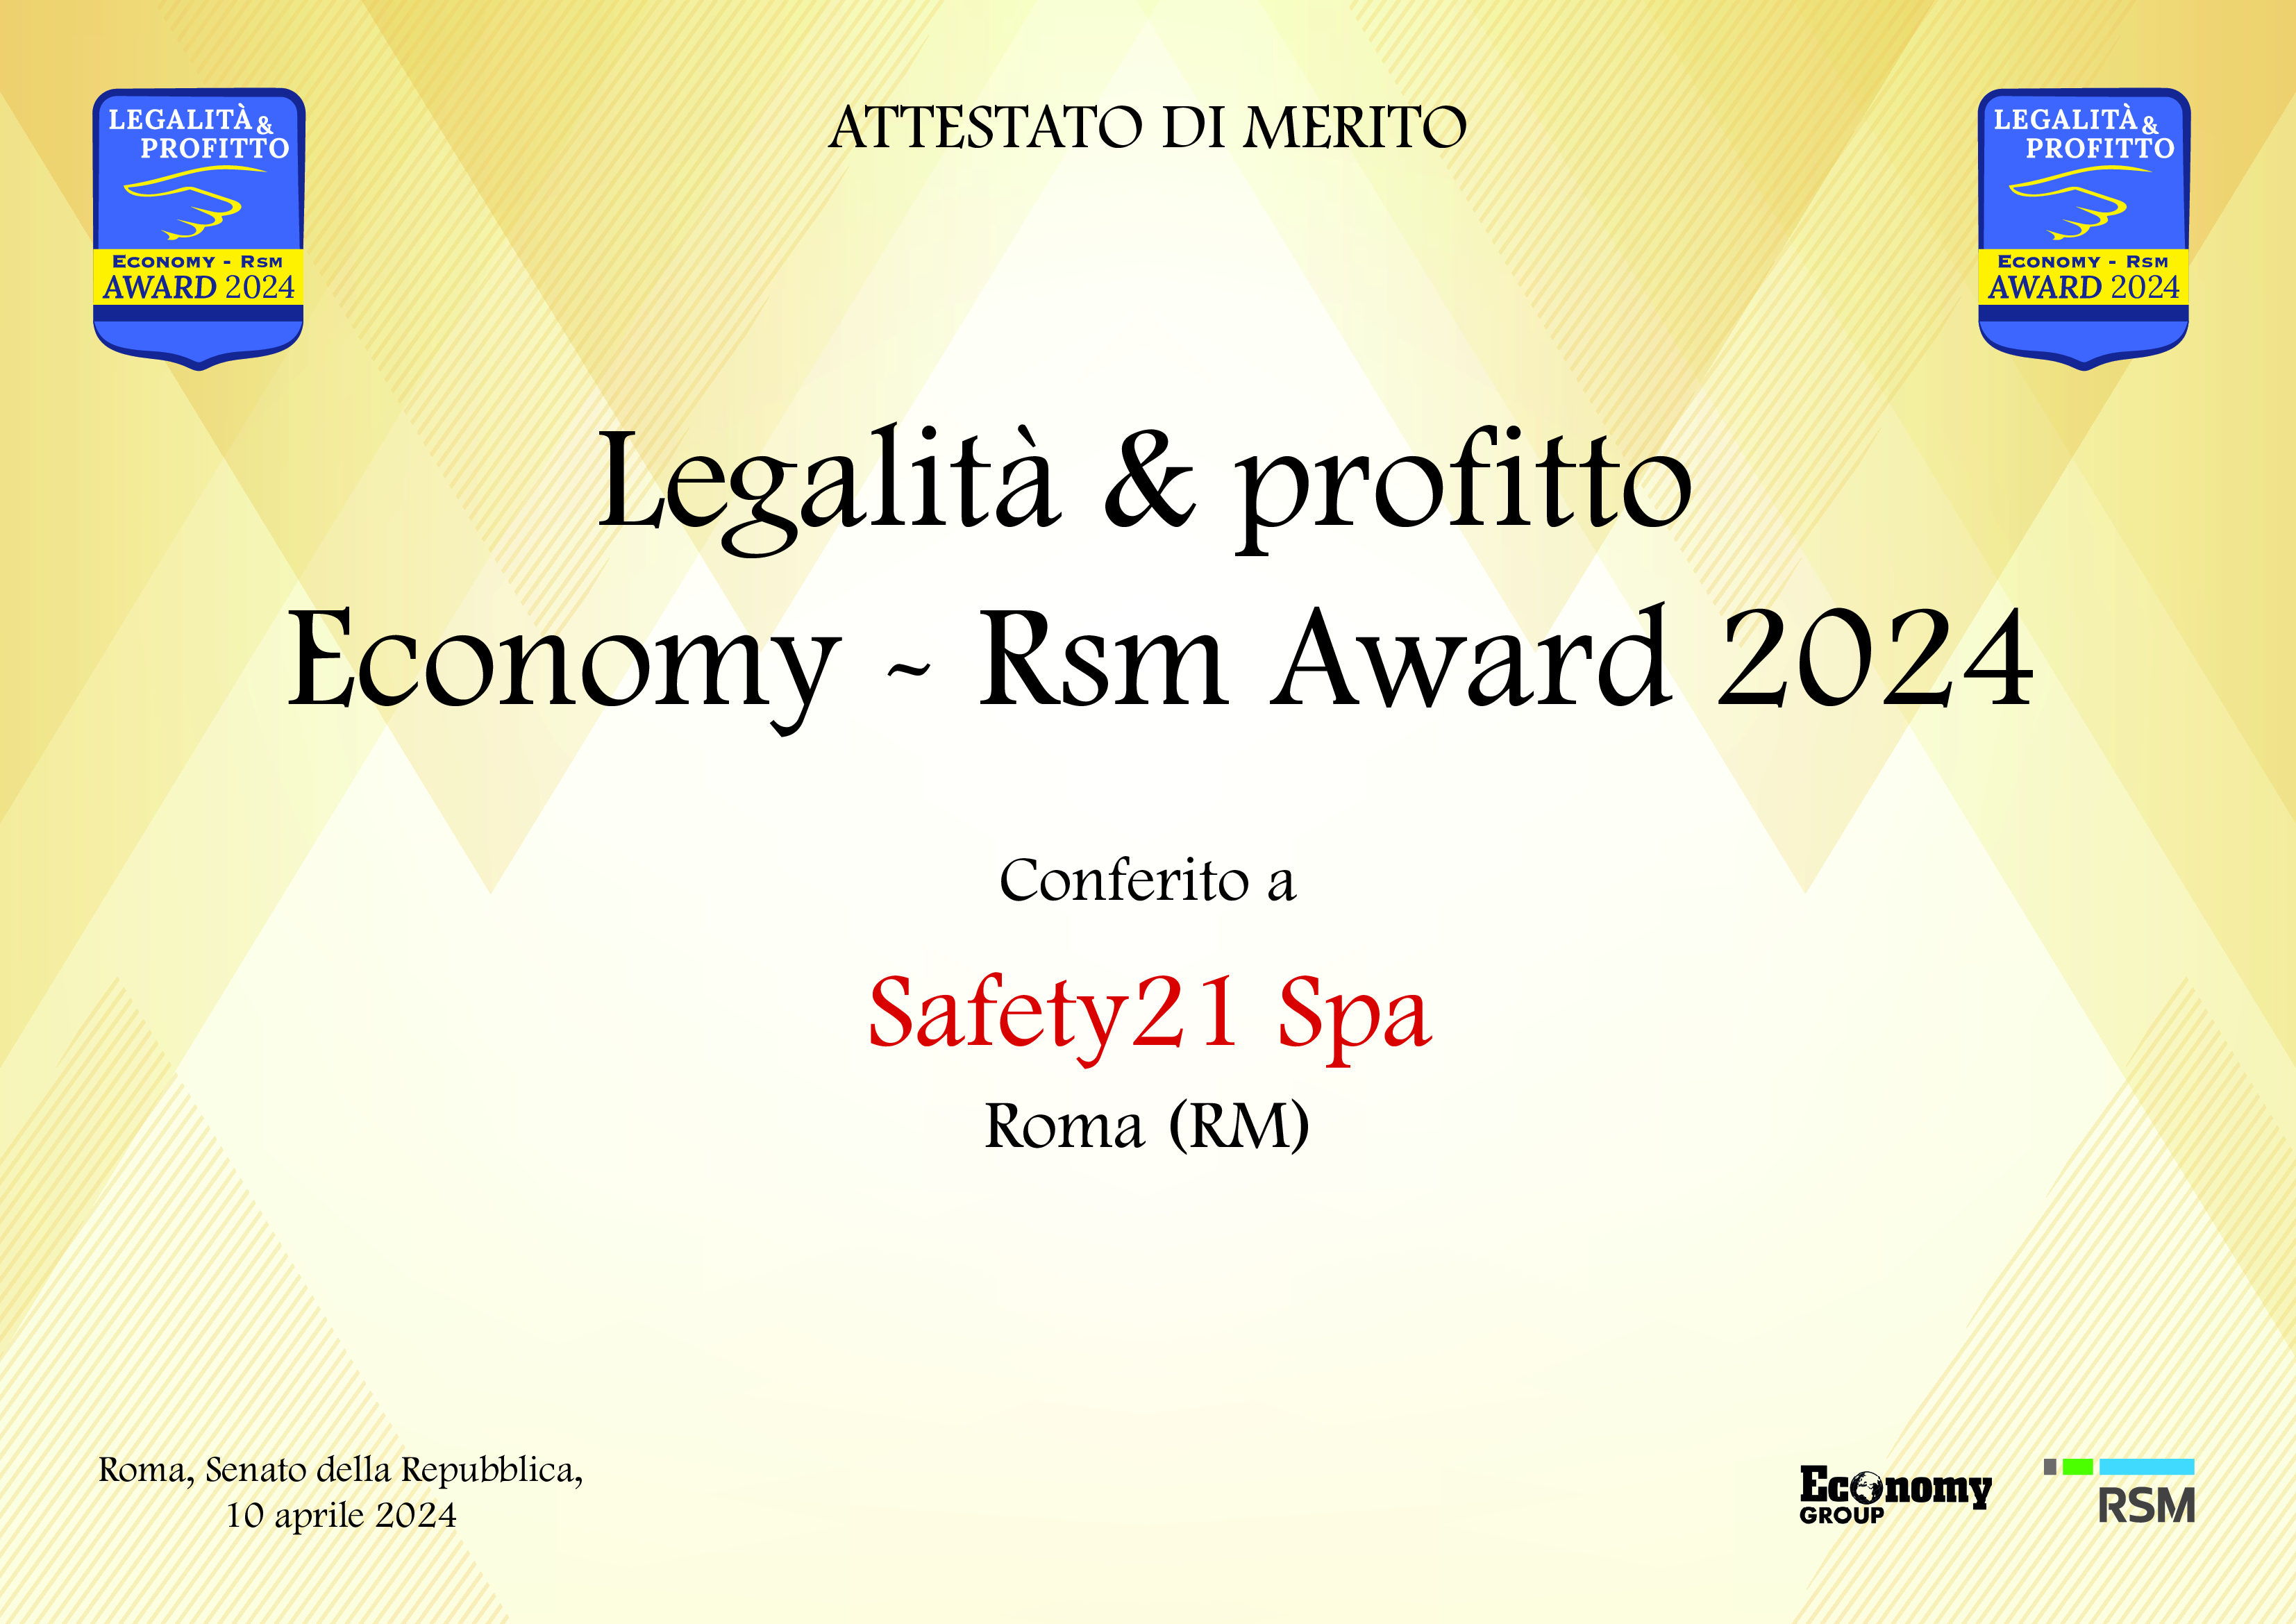 Safety21 ottiene il premio Legalità e Profitto Ecomony – Rsm Award 2024